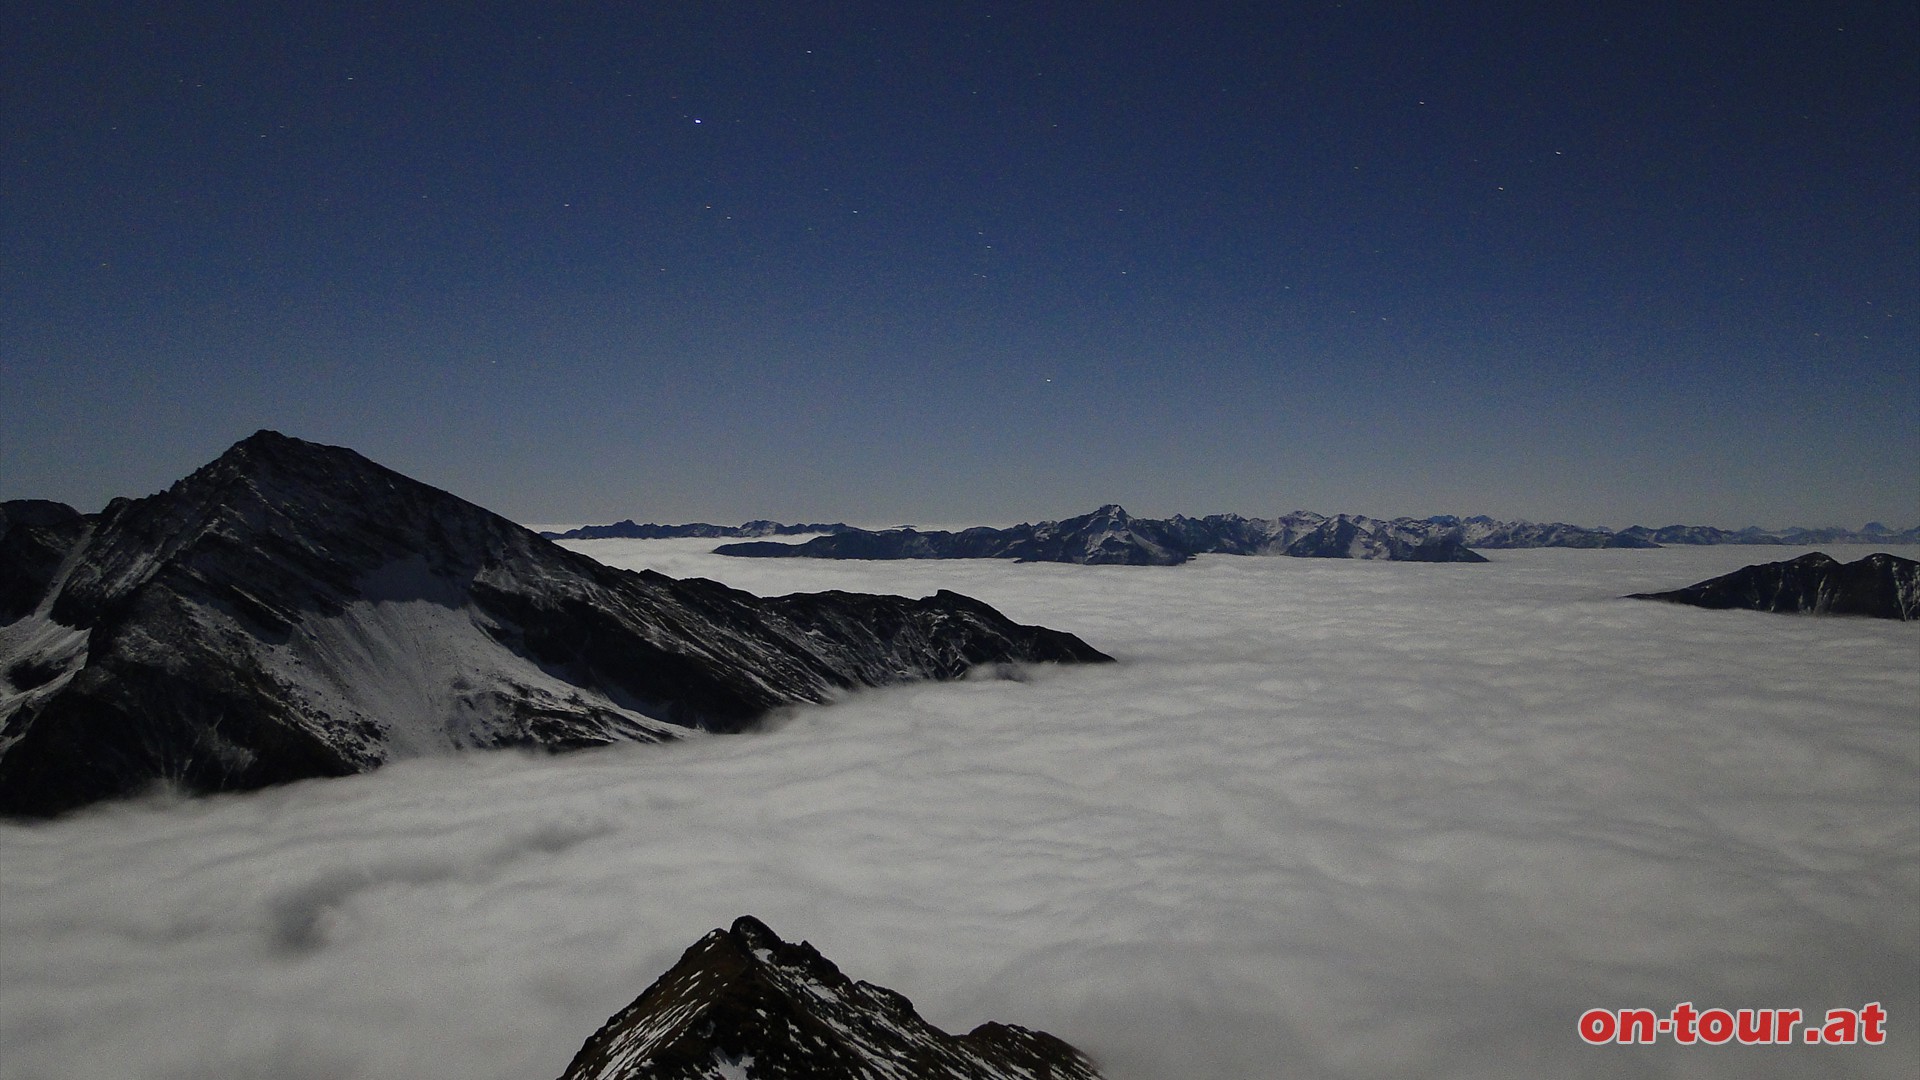 Sternenuniversum ber den Alpen, greifbar nahe und doch unendlich weit entfernt.